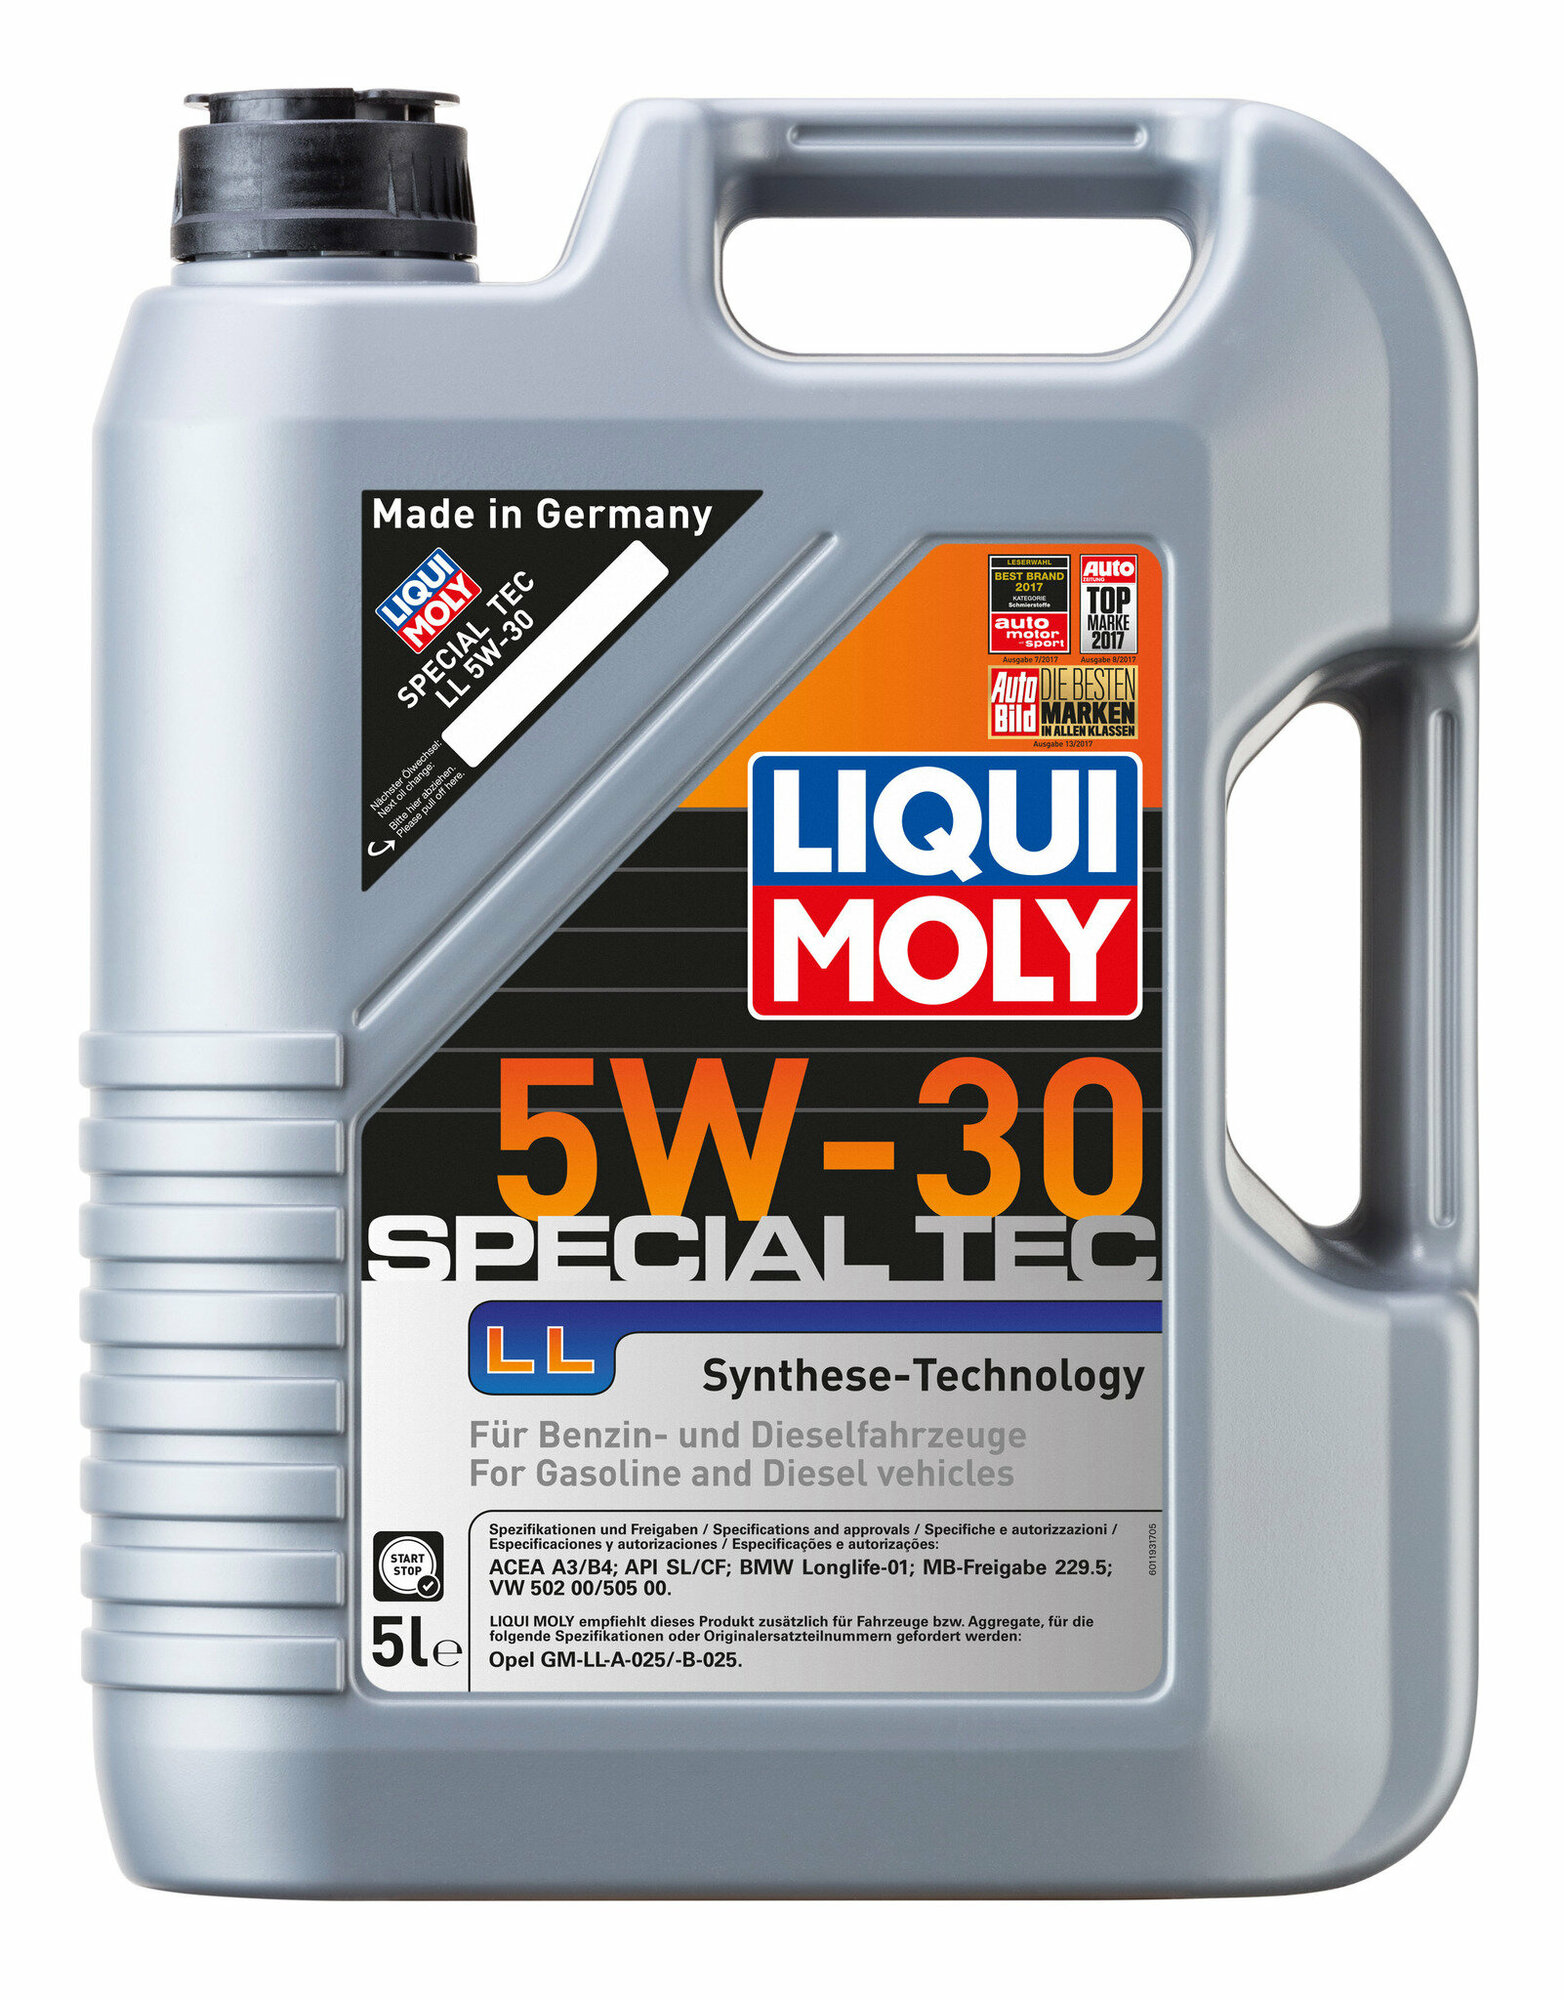 Моторное масло Liqui Moly Special Tec LL 5W30 hc-синтетическое 5л